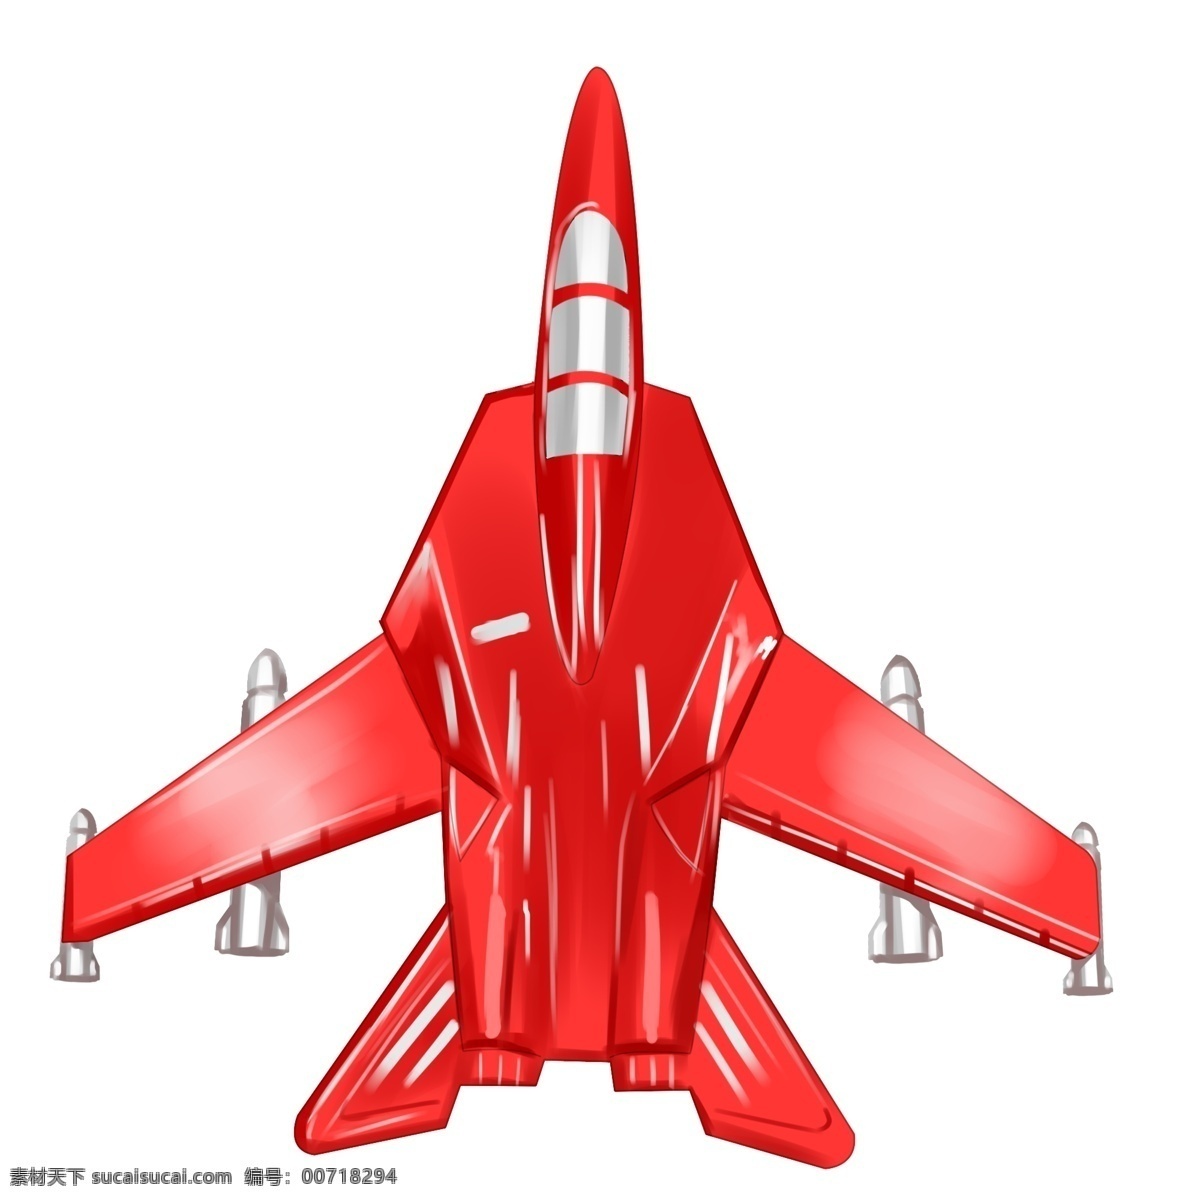 玩具军用飞机 玩具 军用 飞机 卡通